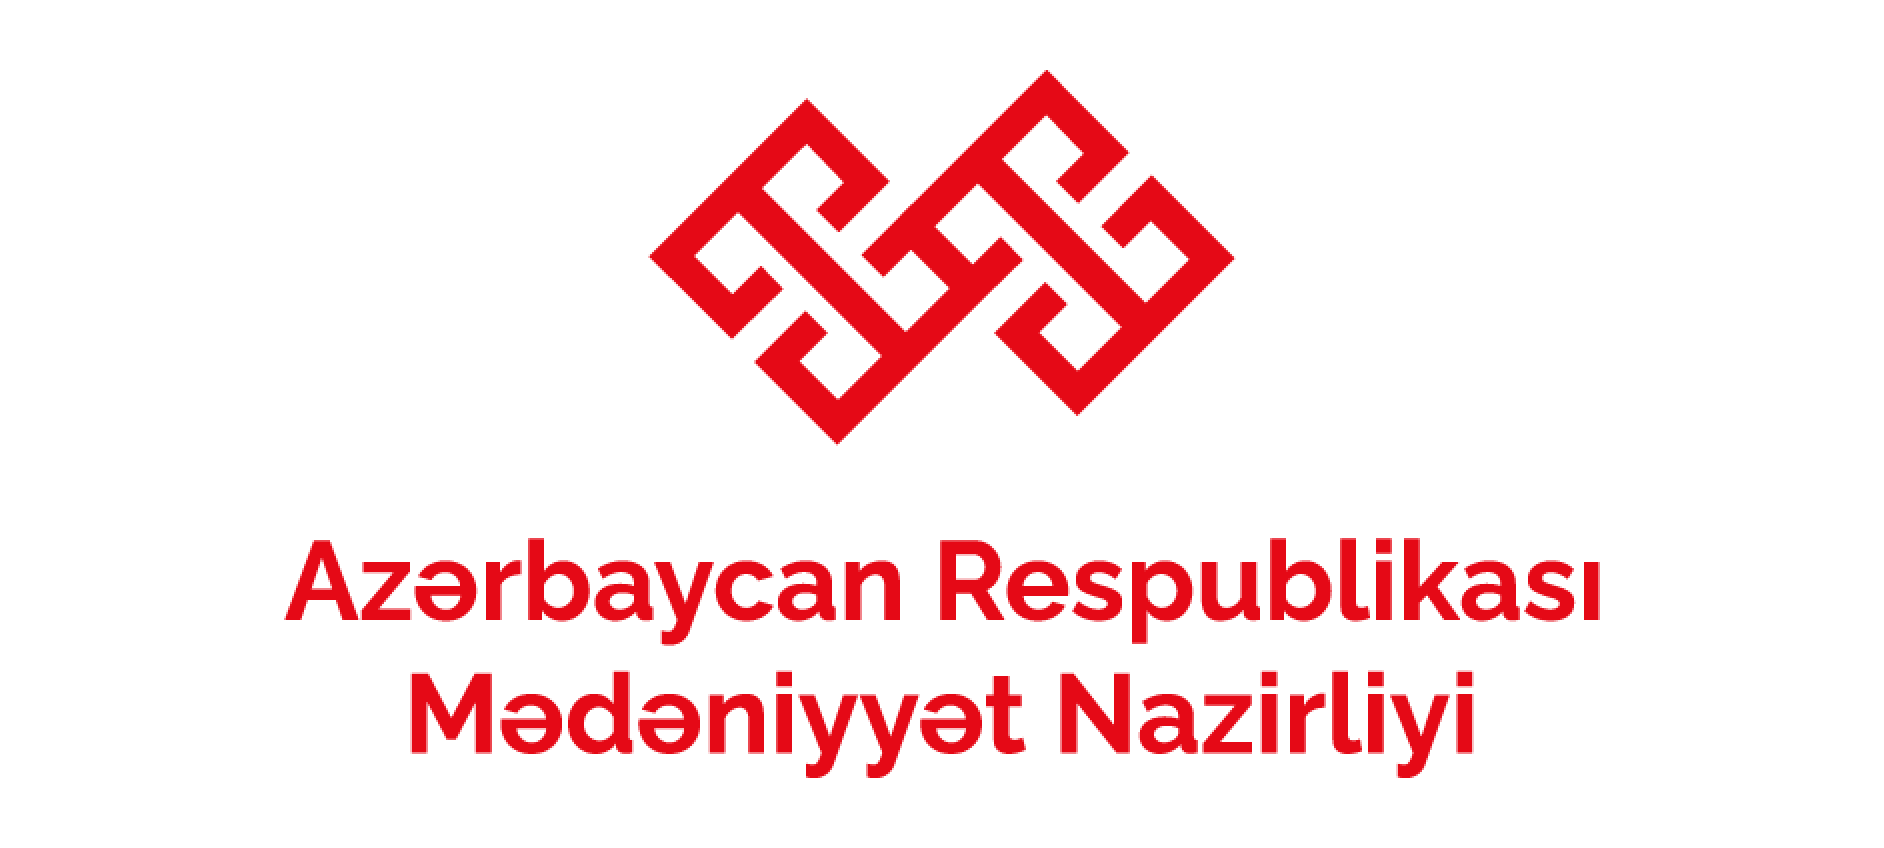 Azerbaycan Respublikası Mədəniyyət Nazirliyi logo